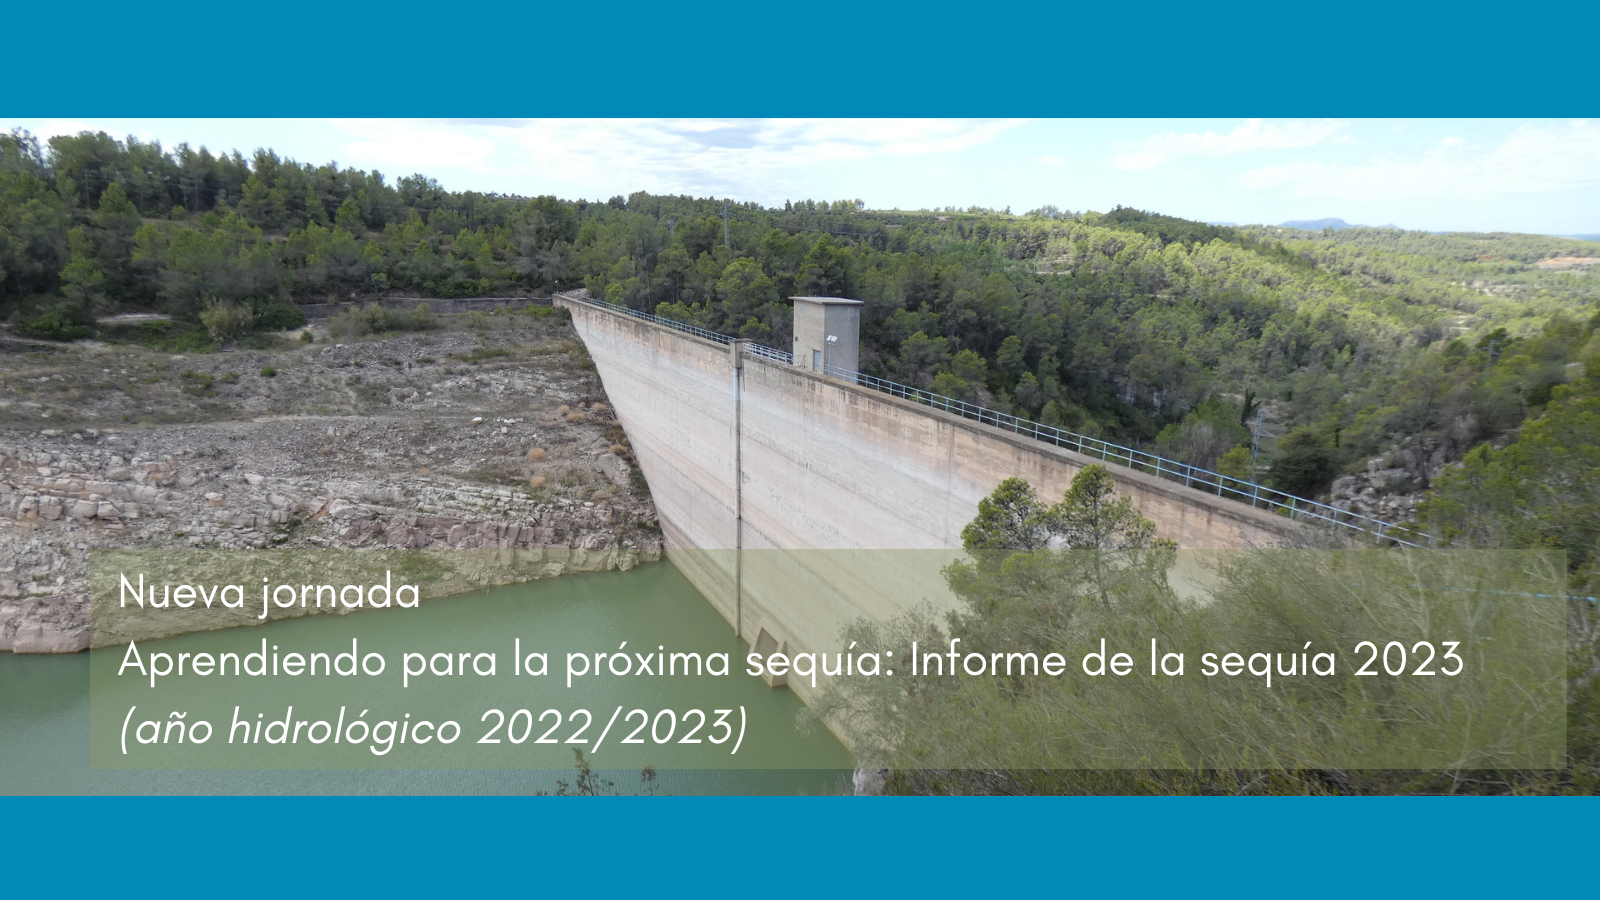 Imagen noticia - Nueva jornada: Aprendiendo para la próxima sequía. Informe de la sequía 2023 (Año hidrológico 2022/2023)